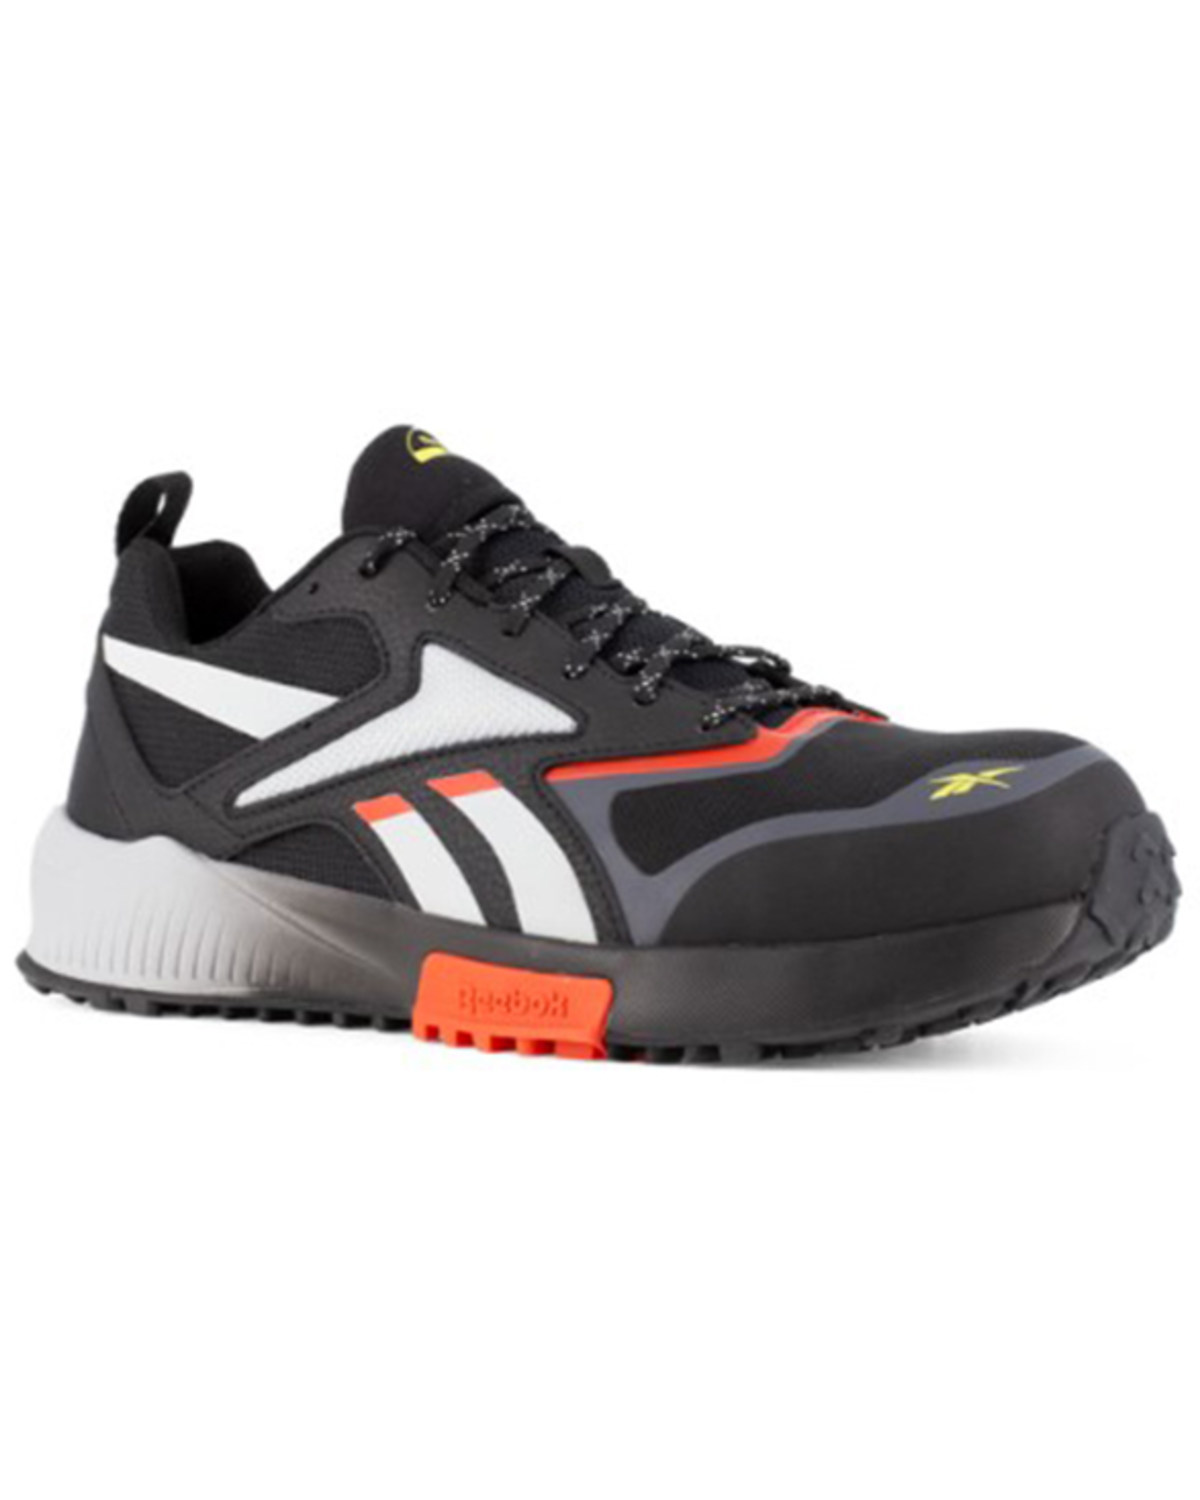 Reebok Men's Lavante Trail 2 Athletic Work Shoes - Composite Toe